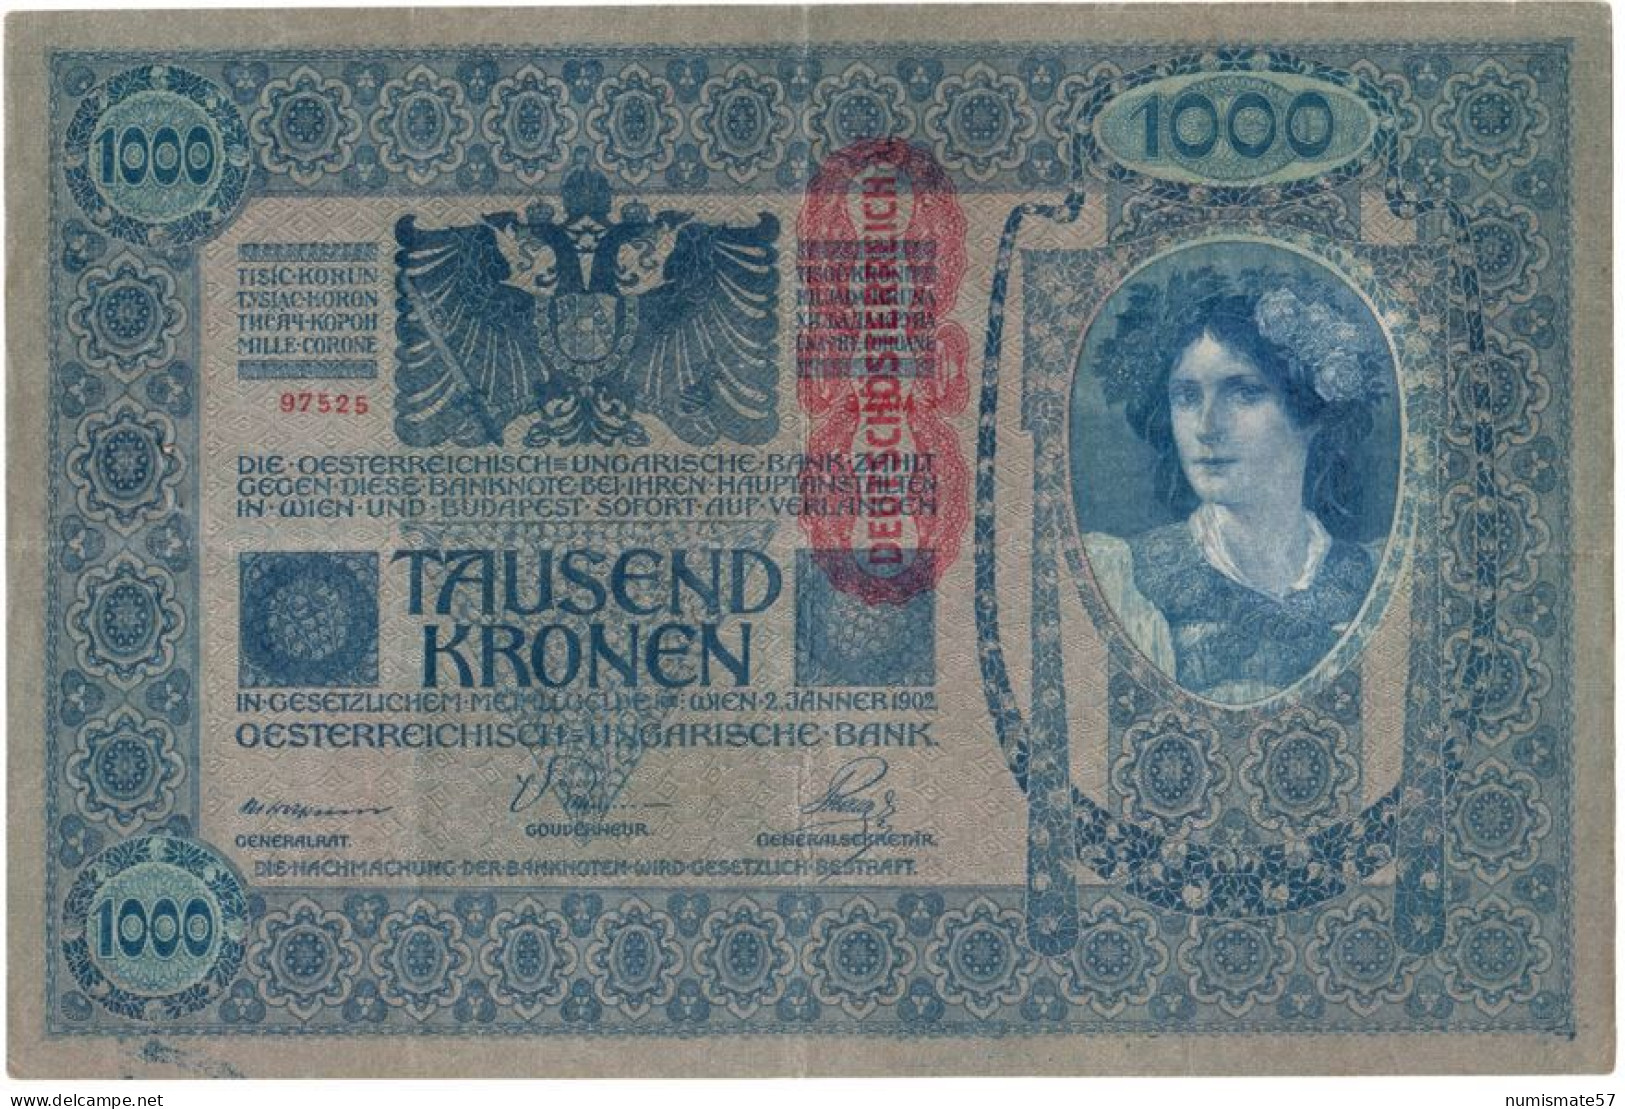 AUTRICHE - AUSTRIA - BILLET 1000 KRONEN 1902 Avec Surcharge Rouge "Deustschosterreich" - ( KK# 141 - P# 59 ) - Autriche